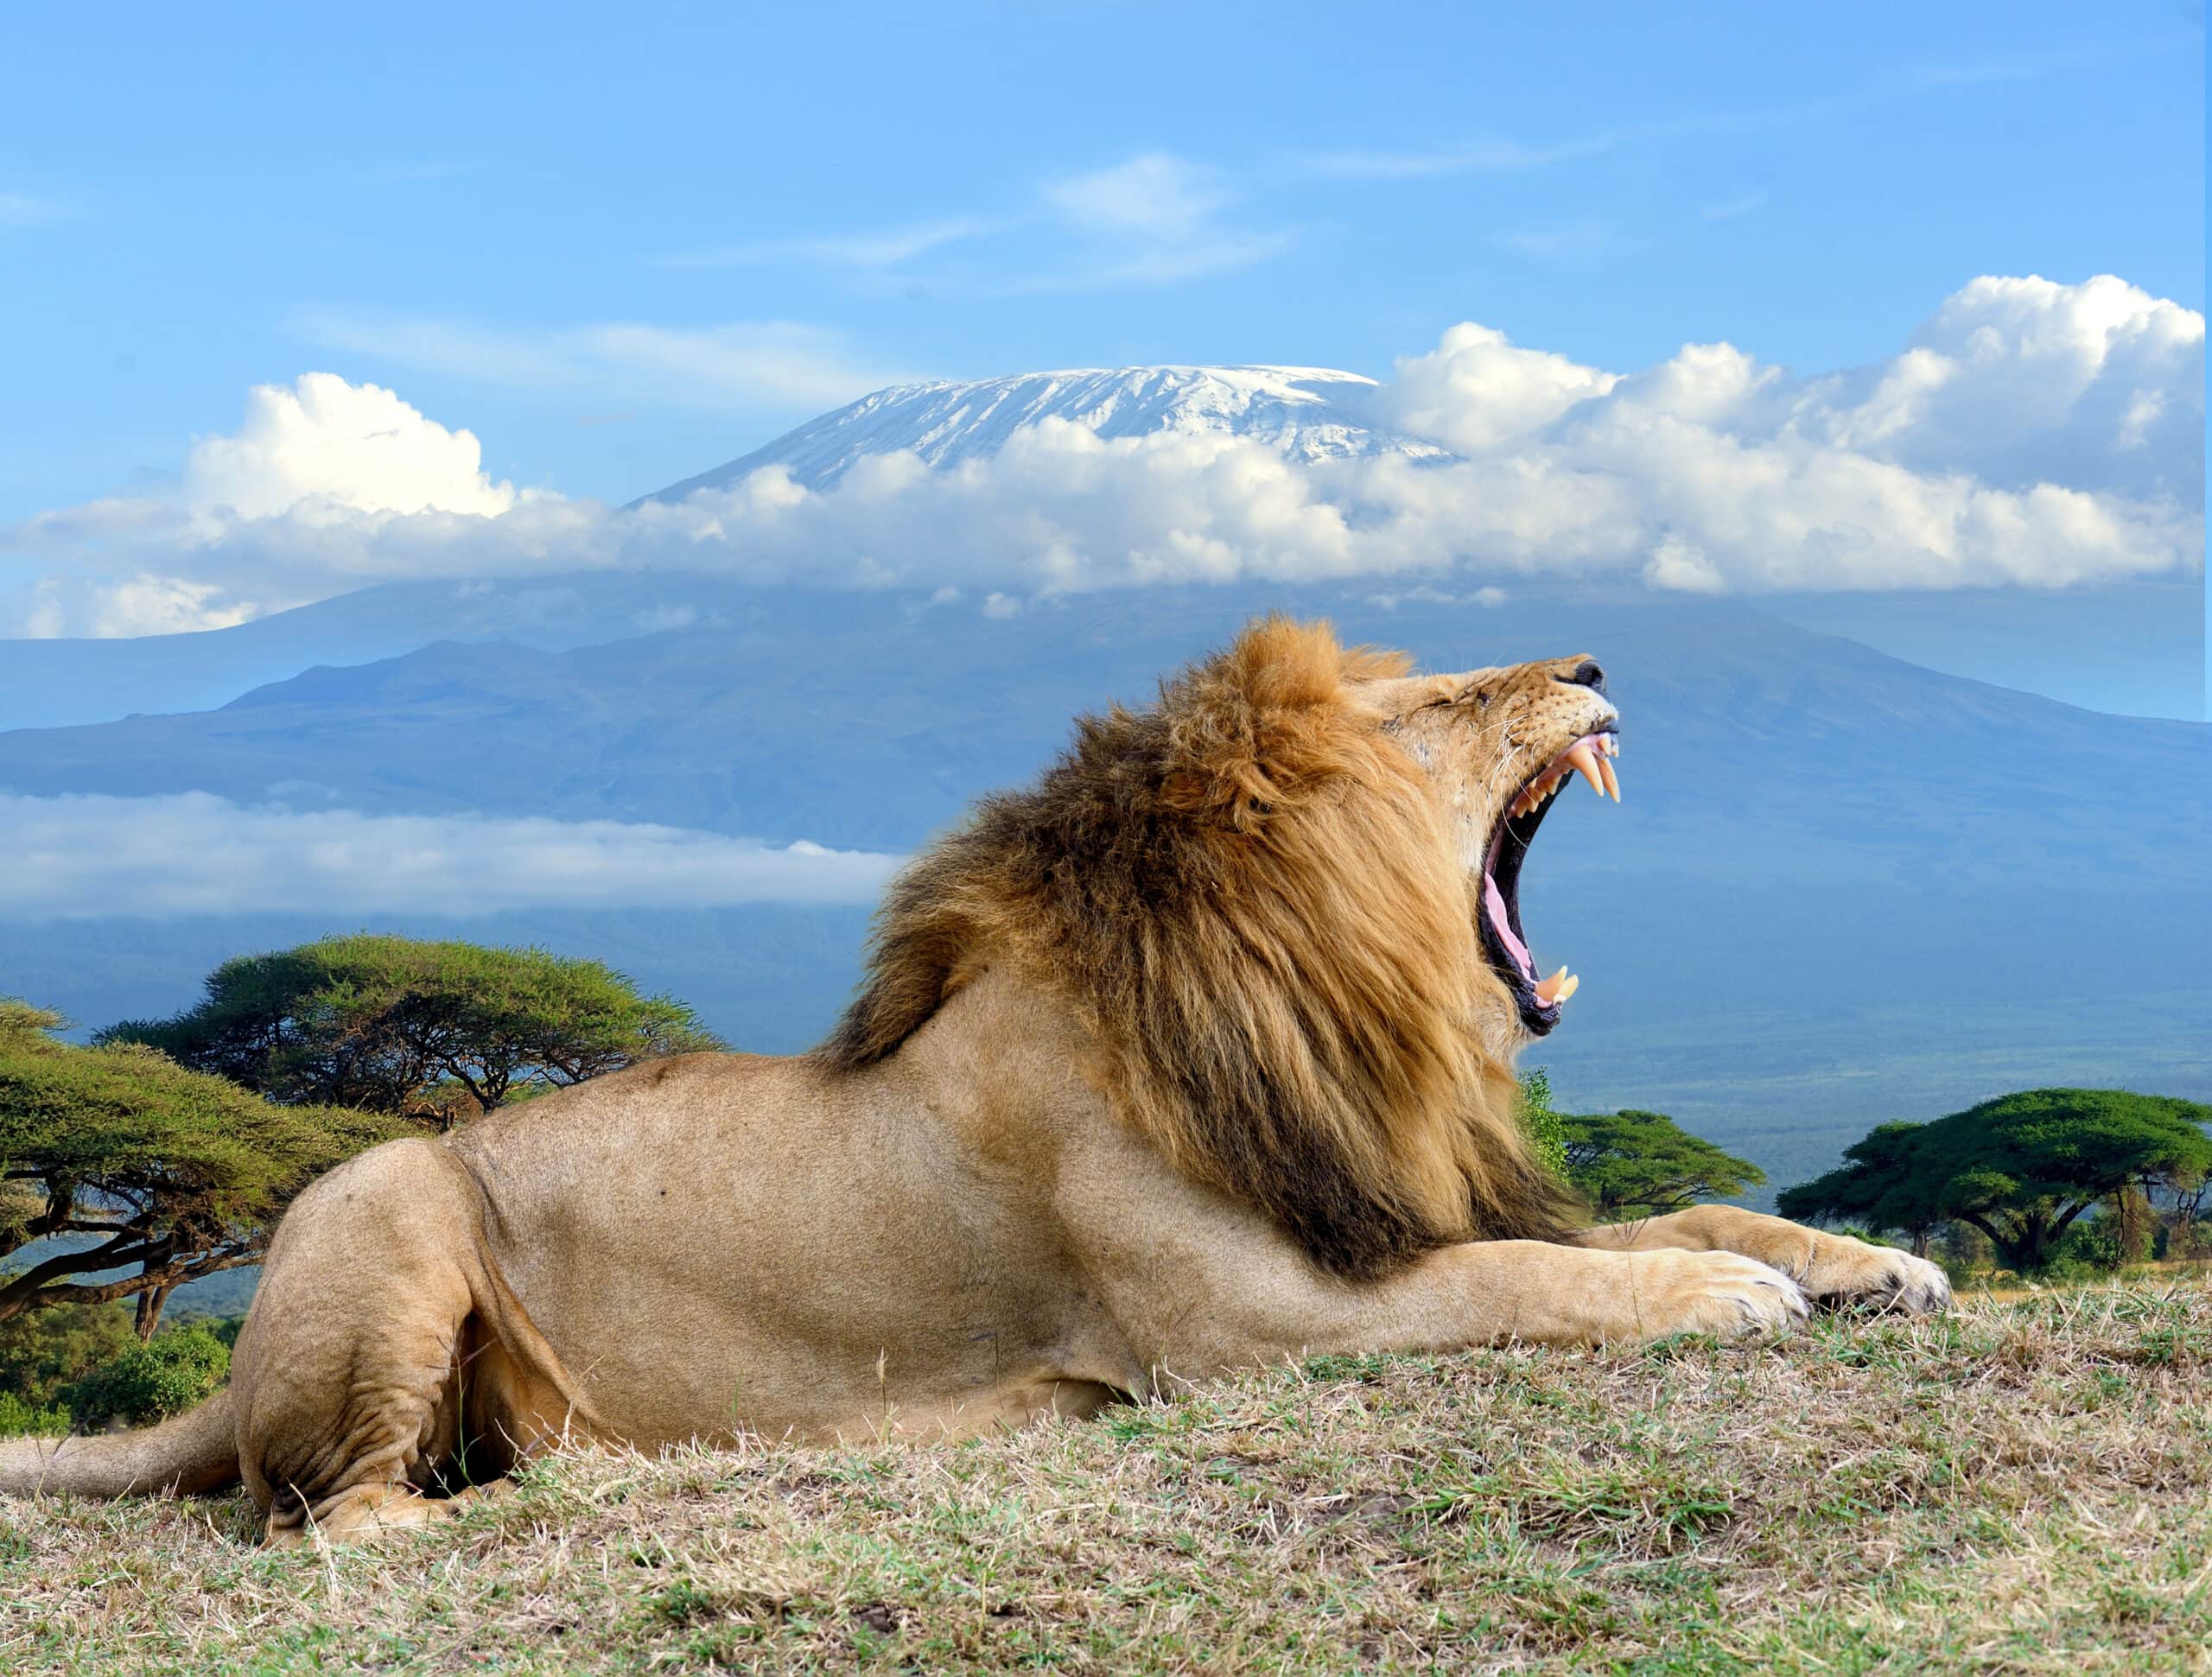 lion on kilimanjaro mount background in national p 2021 08 26 15 55 54 utc scaled